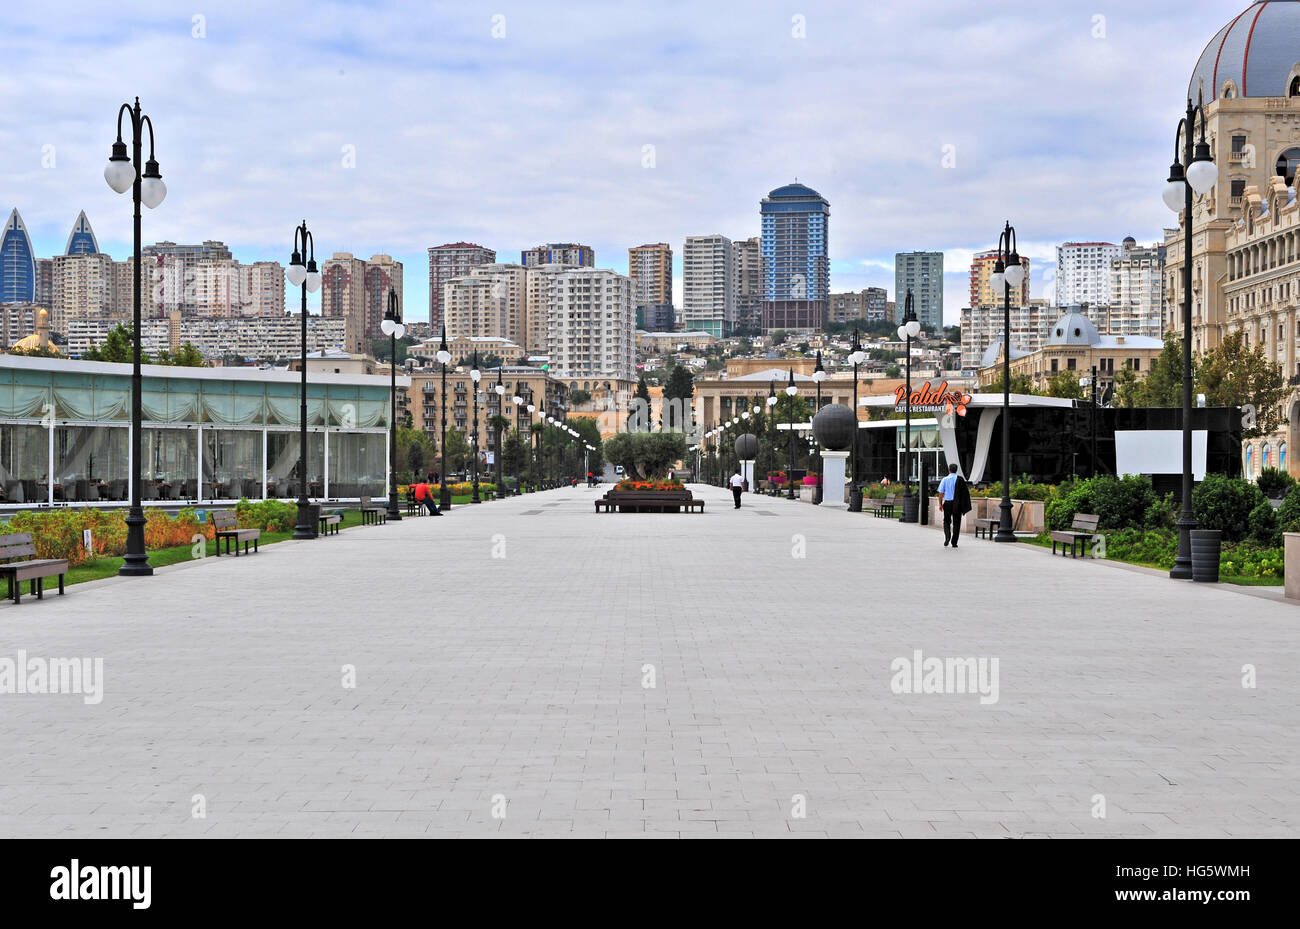 BAKU, AZERBAIJAN - SEPTEMBER 26: Fizuli boulevard in city centre of Baku on September 26, 2016. Baku is a capital and largest city of Azerbaijan. Stock Photo